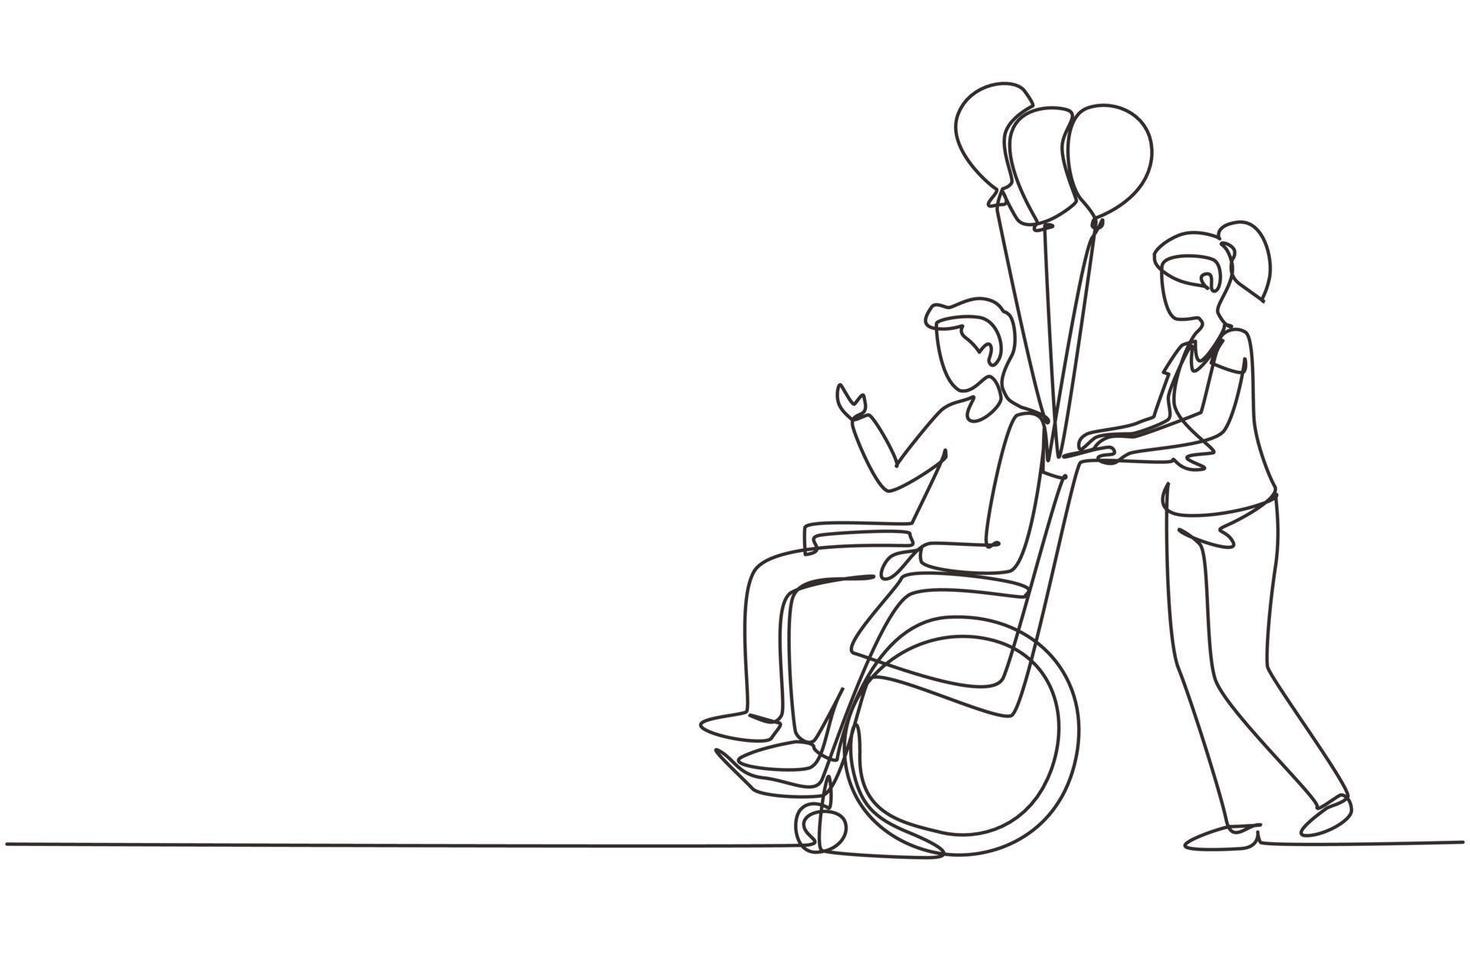 continu une ligne dessinant le concept de scène de personnes handicapées. la femme porte un homme handicapé en fauteuil roulant. accessibilité, réadaptation personne invalide, personnes activités. vecteur de conception de dessin à une seule ligne